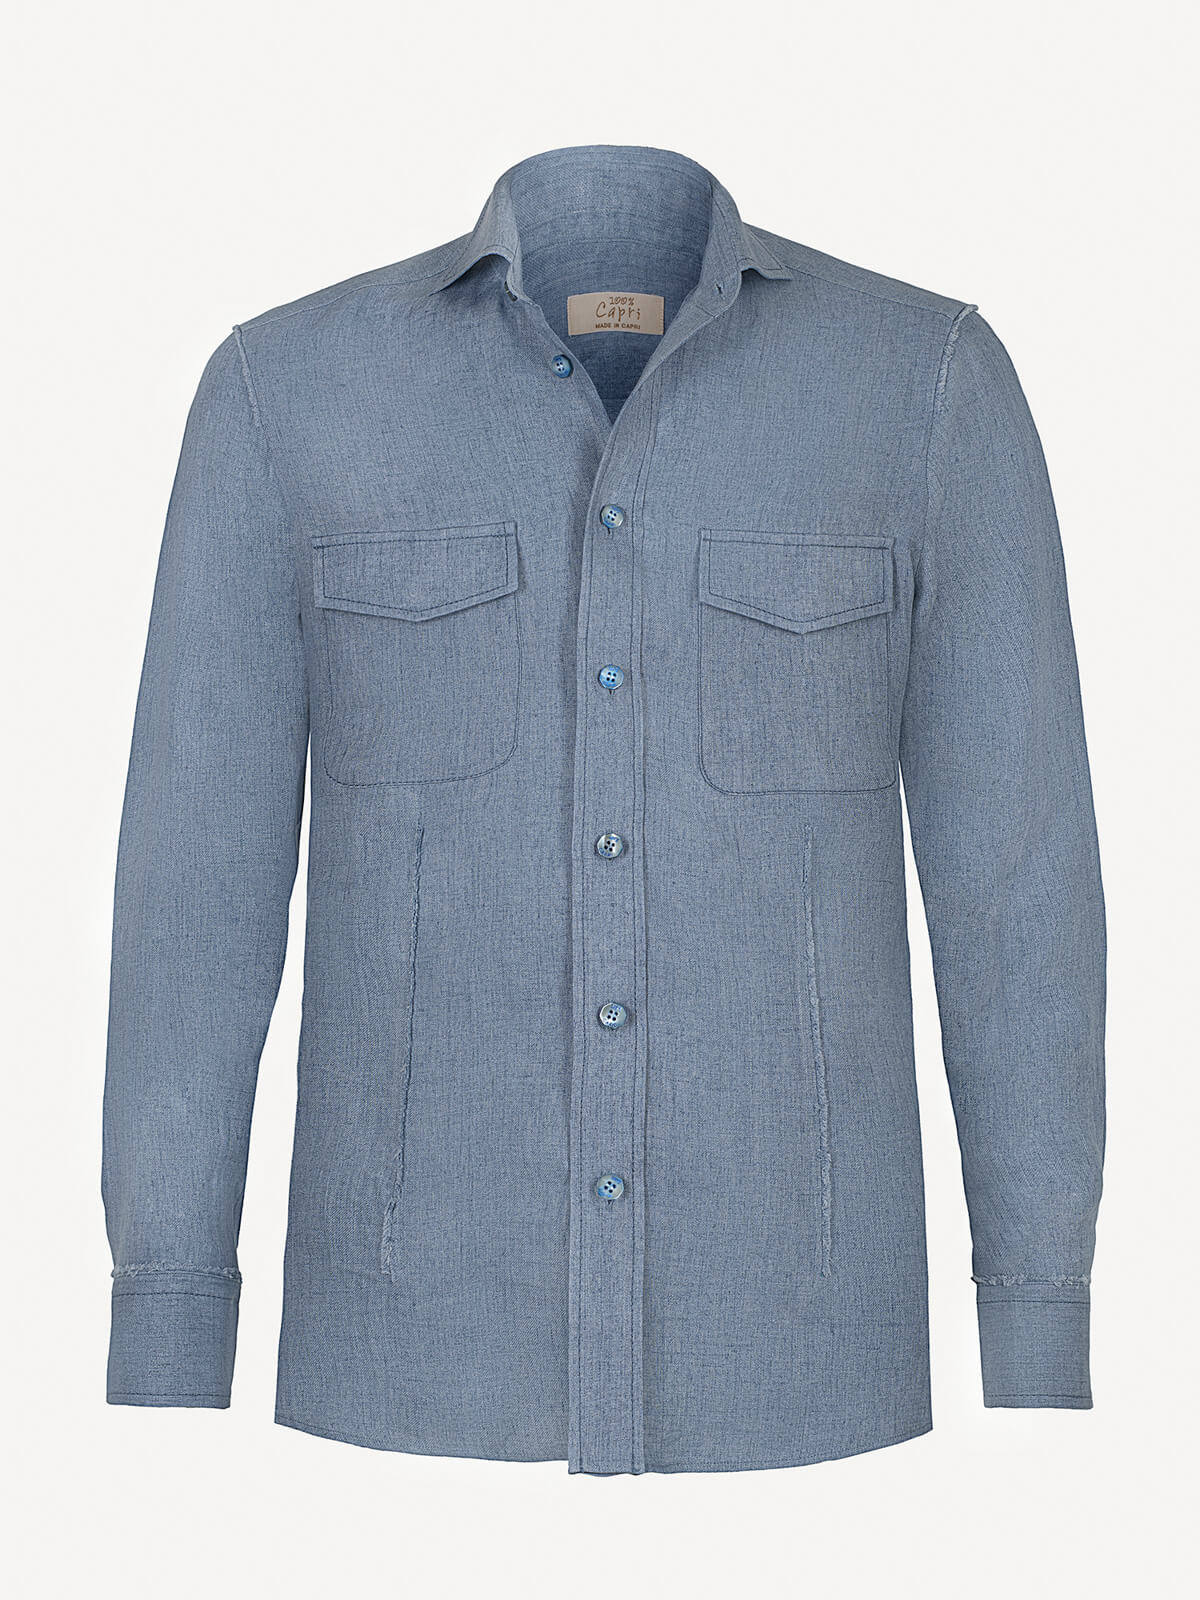 Camicia New Line front jeans 100% Capri